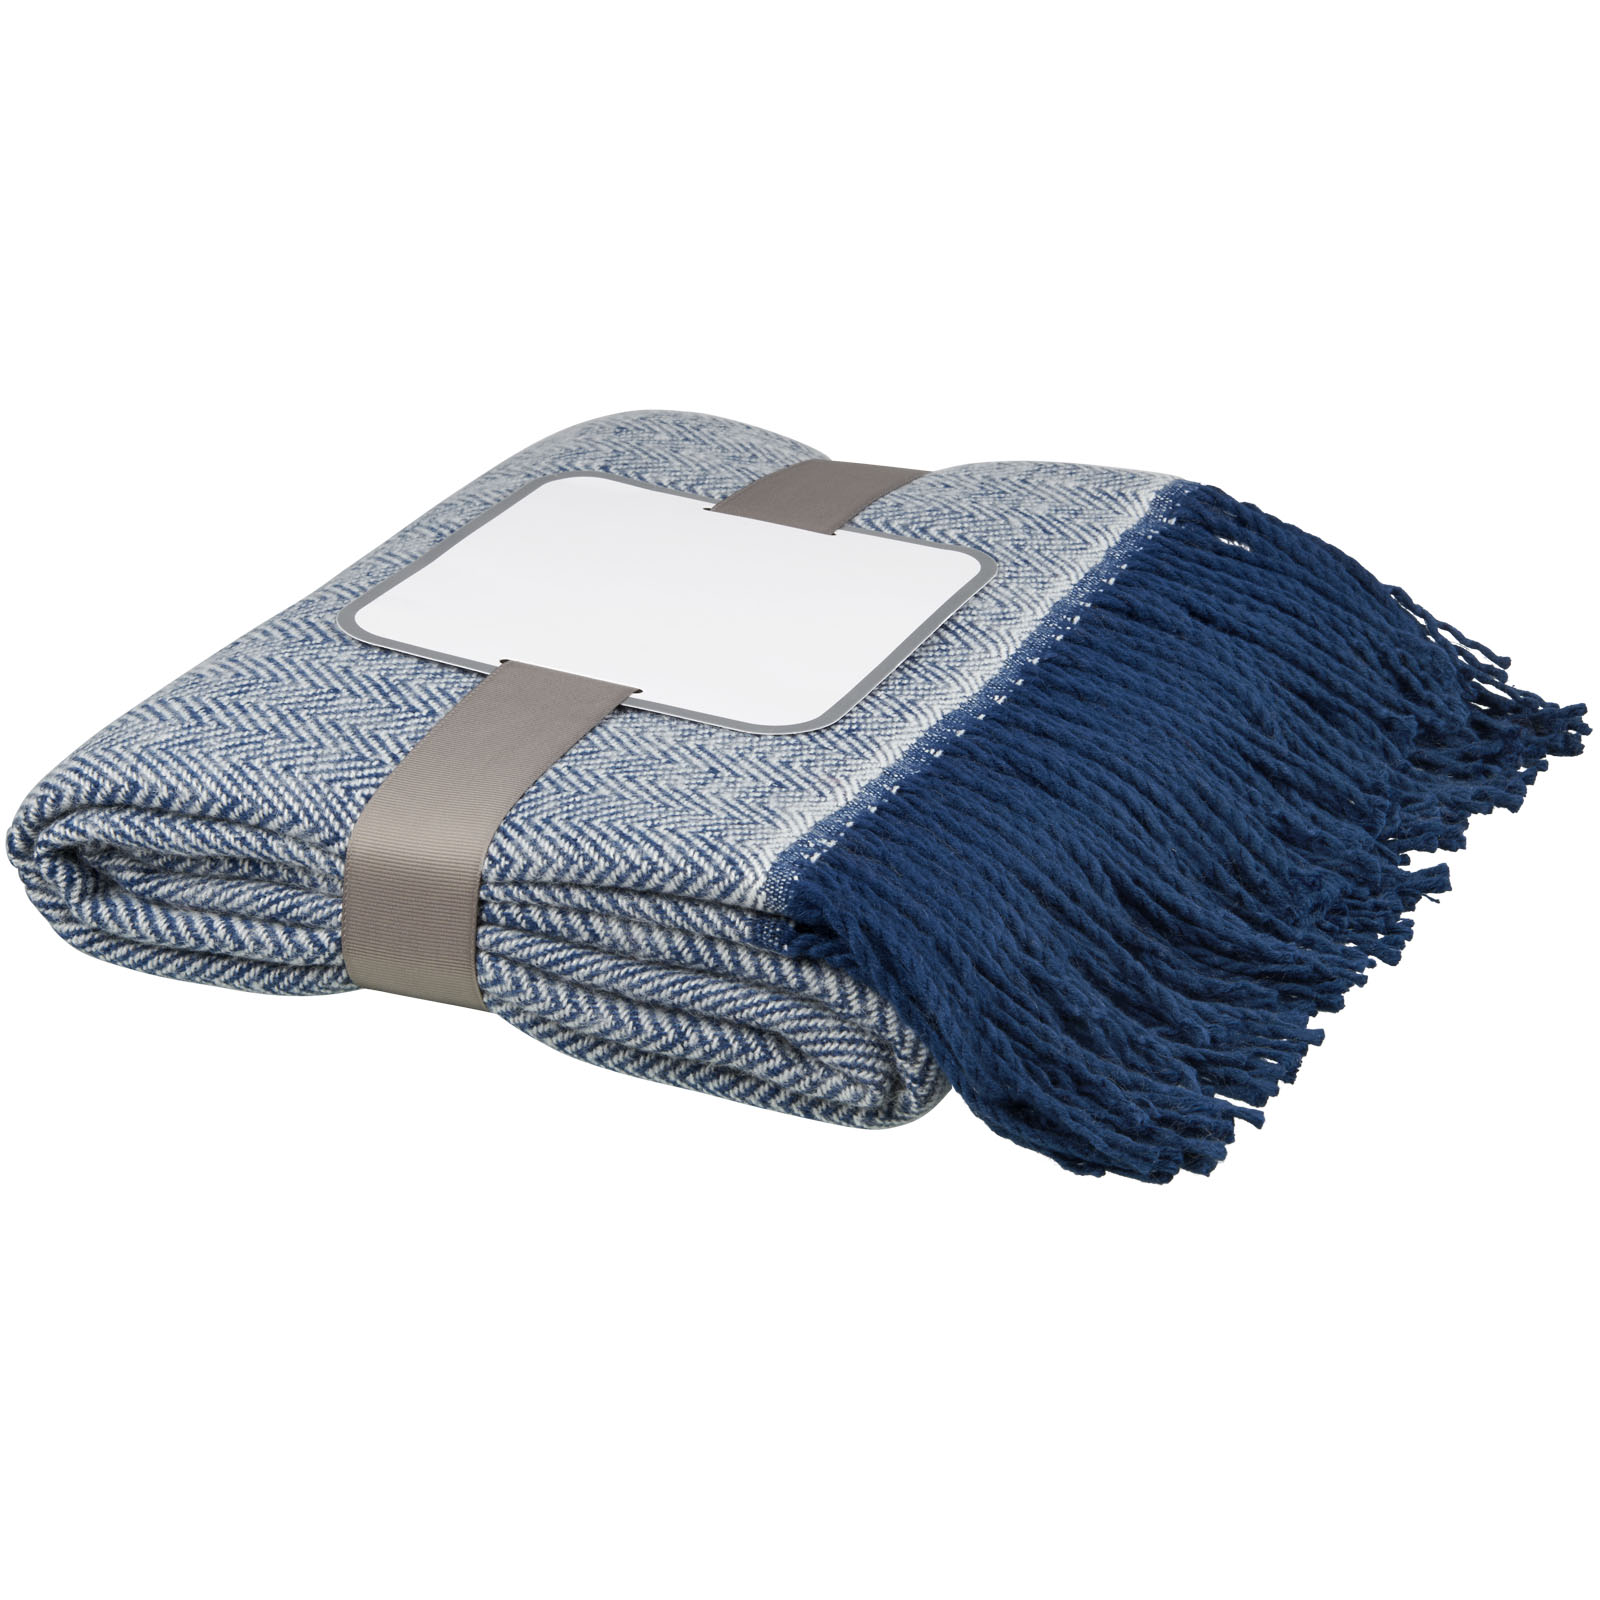 Advertising Blankets - Haven herringbone throw blanket